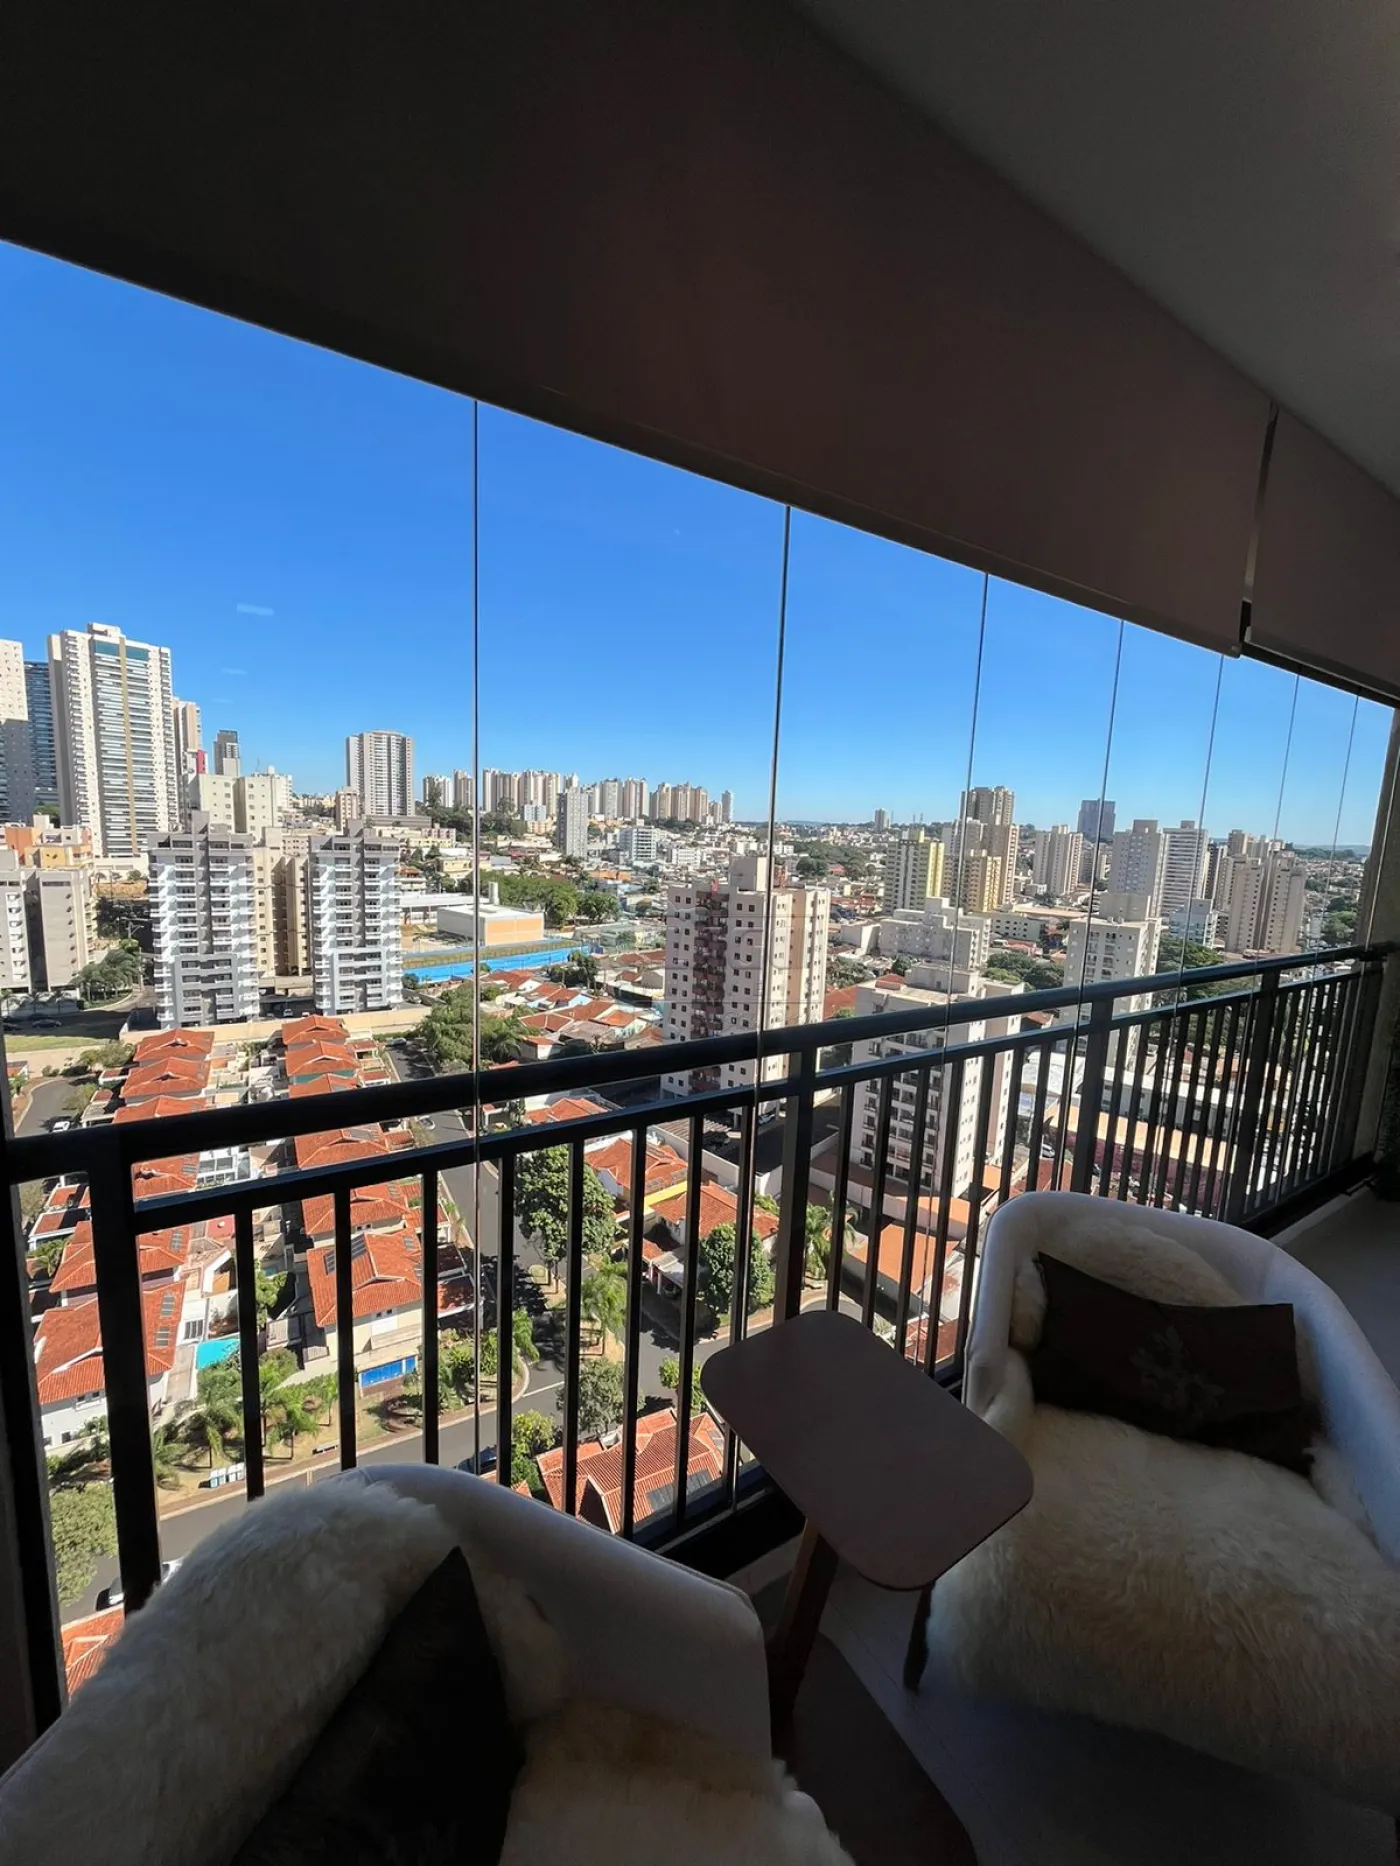 Comprar Apartamento / Padrão em Ribeirão Preto R$ 525.000,00 - Foto 4